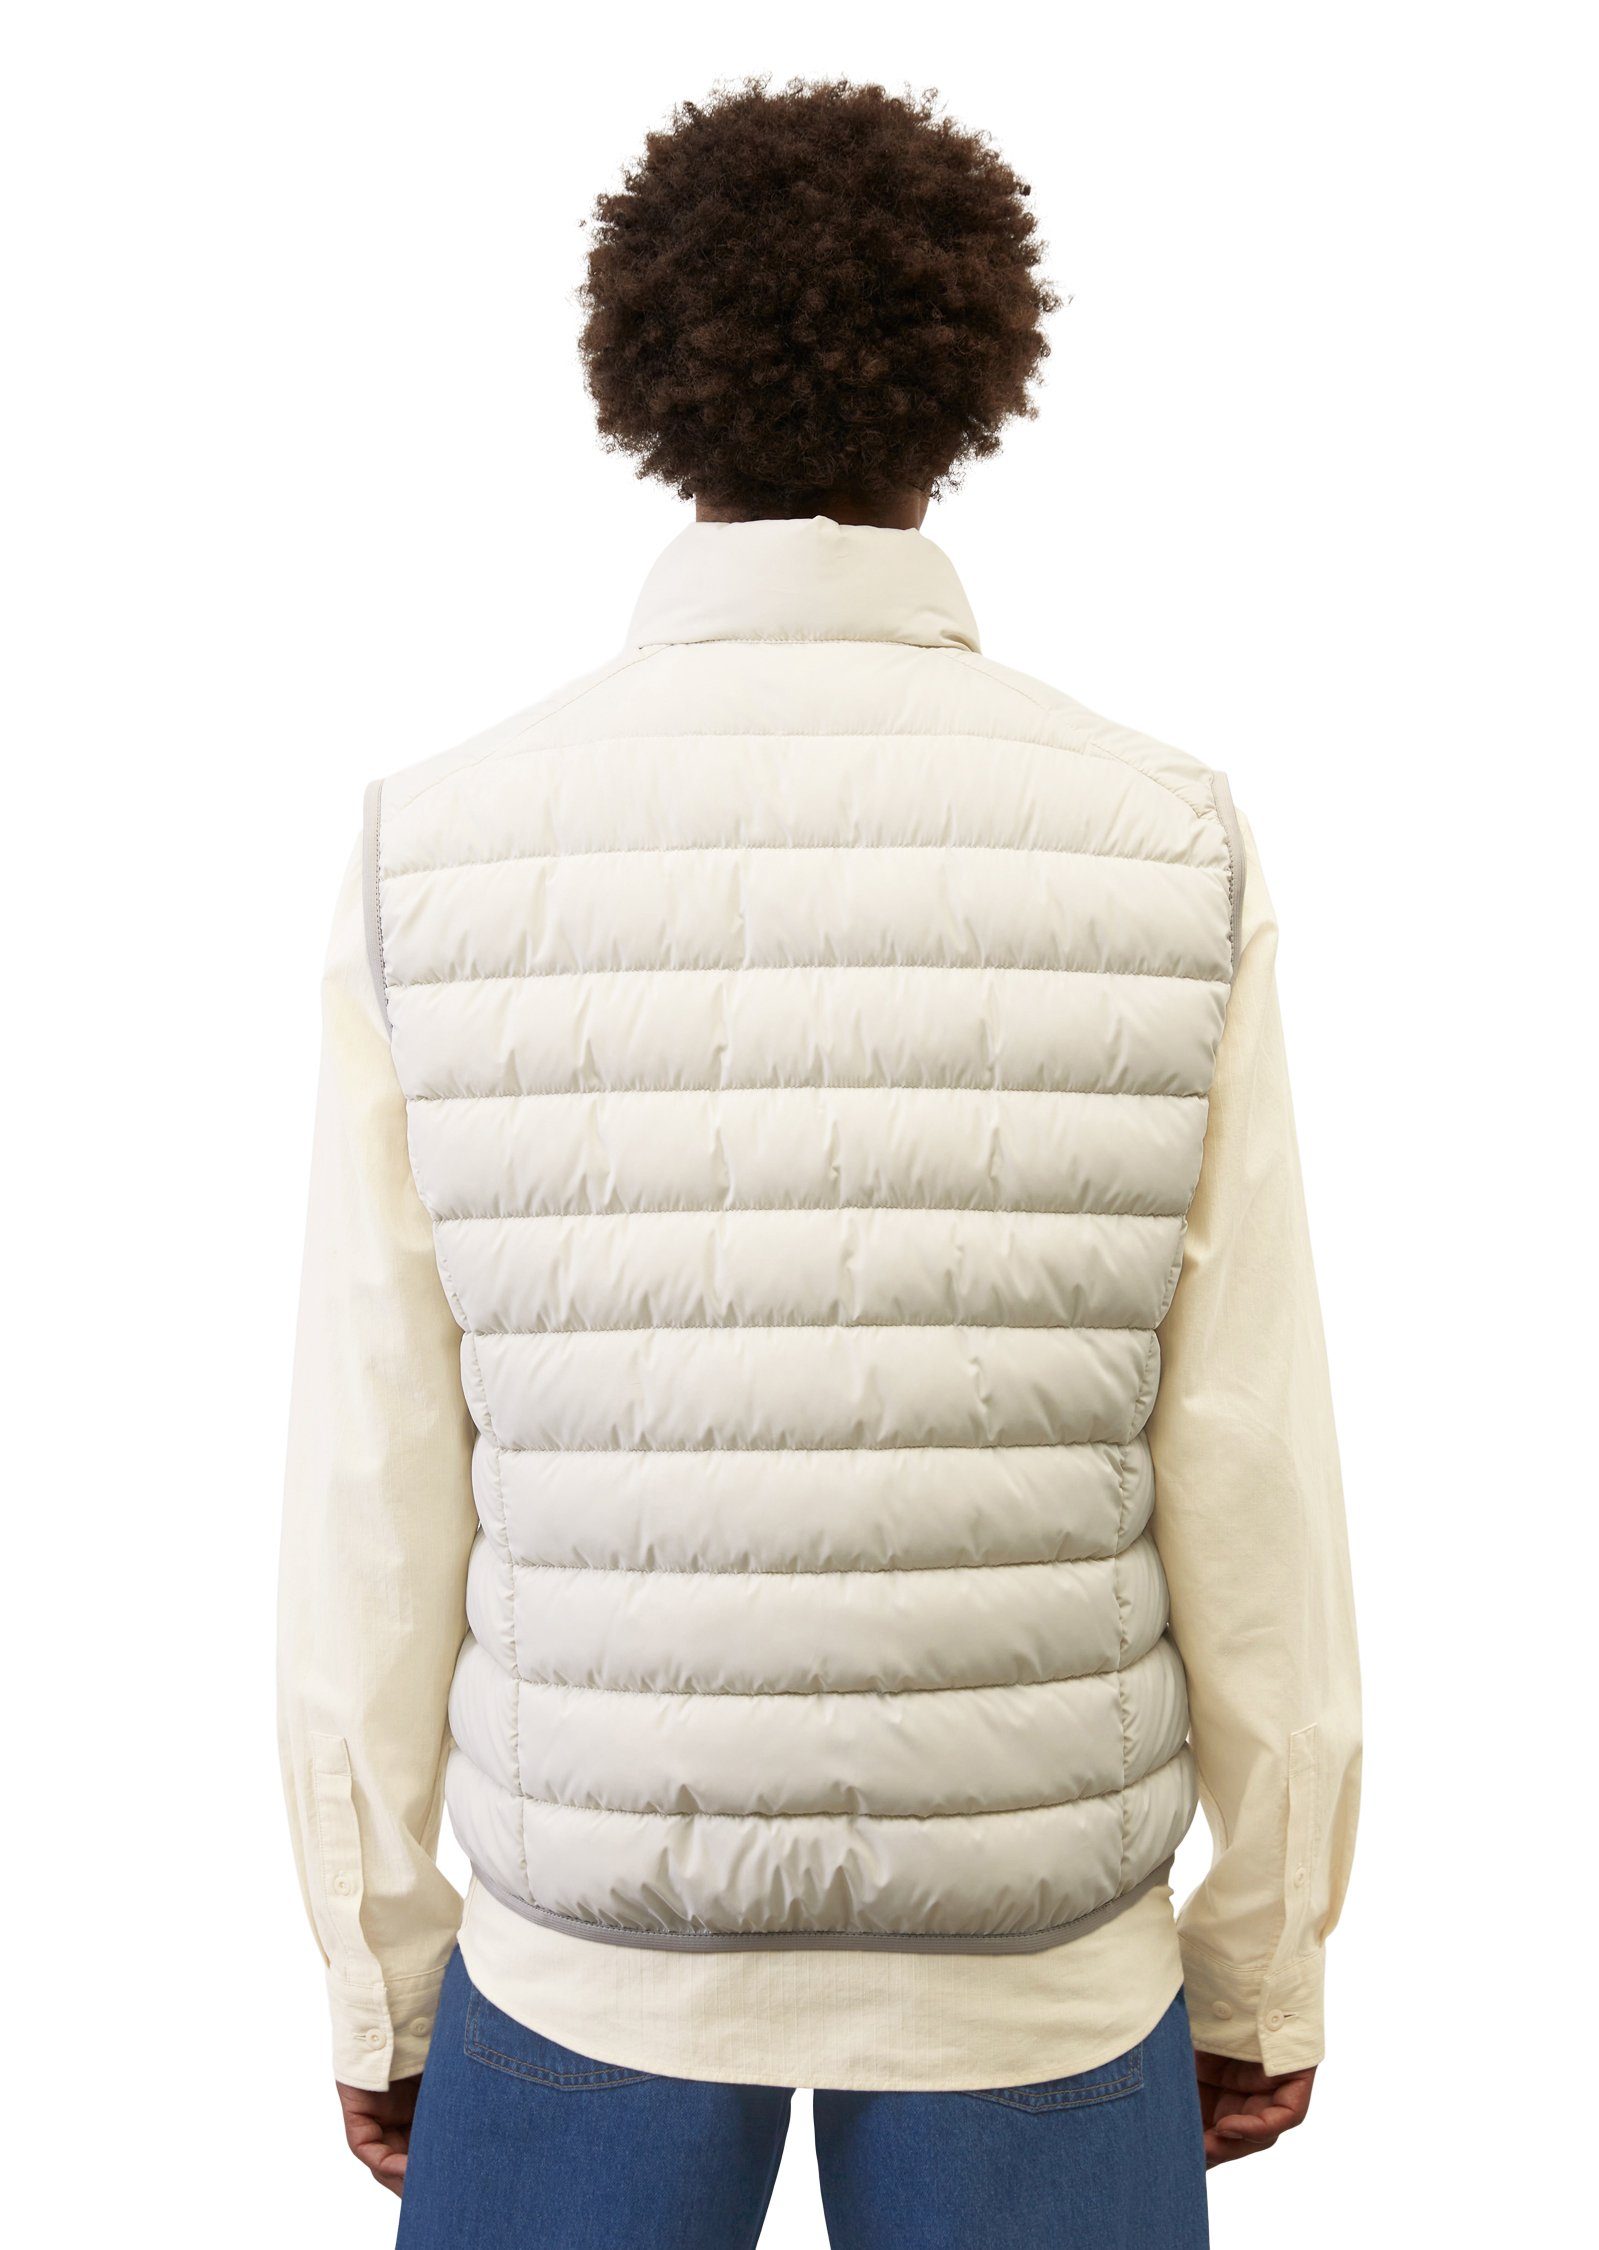 Marc O'Polo Steppweste Vest, sdnd, collar linen Oberfläche wasserabweisender mit white stand-up